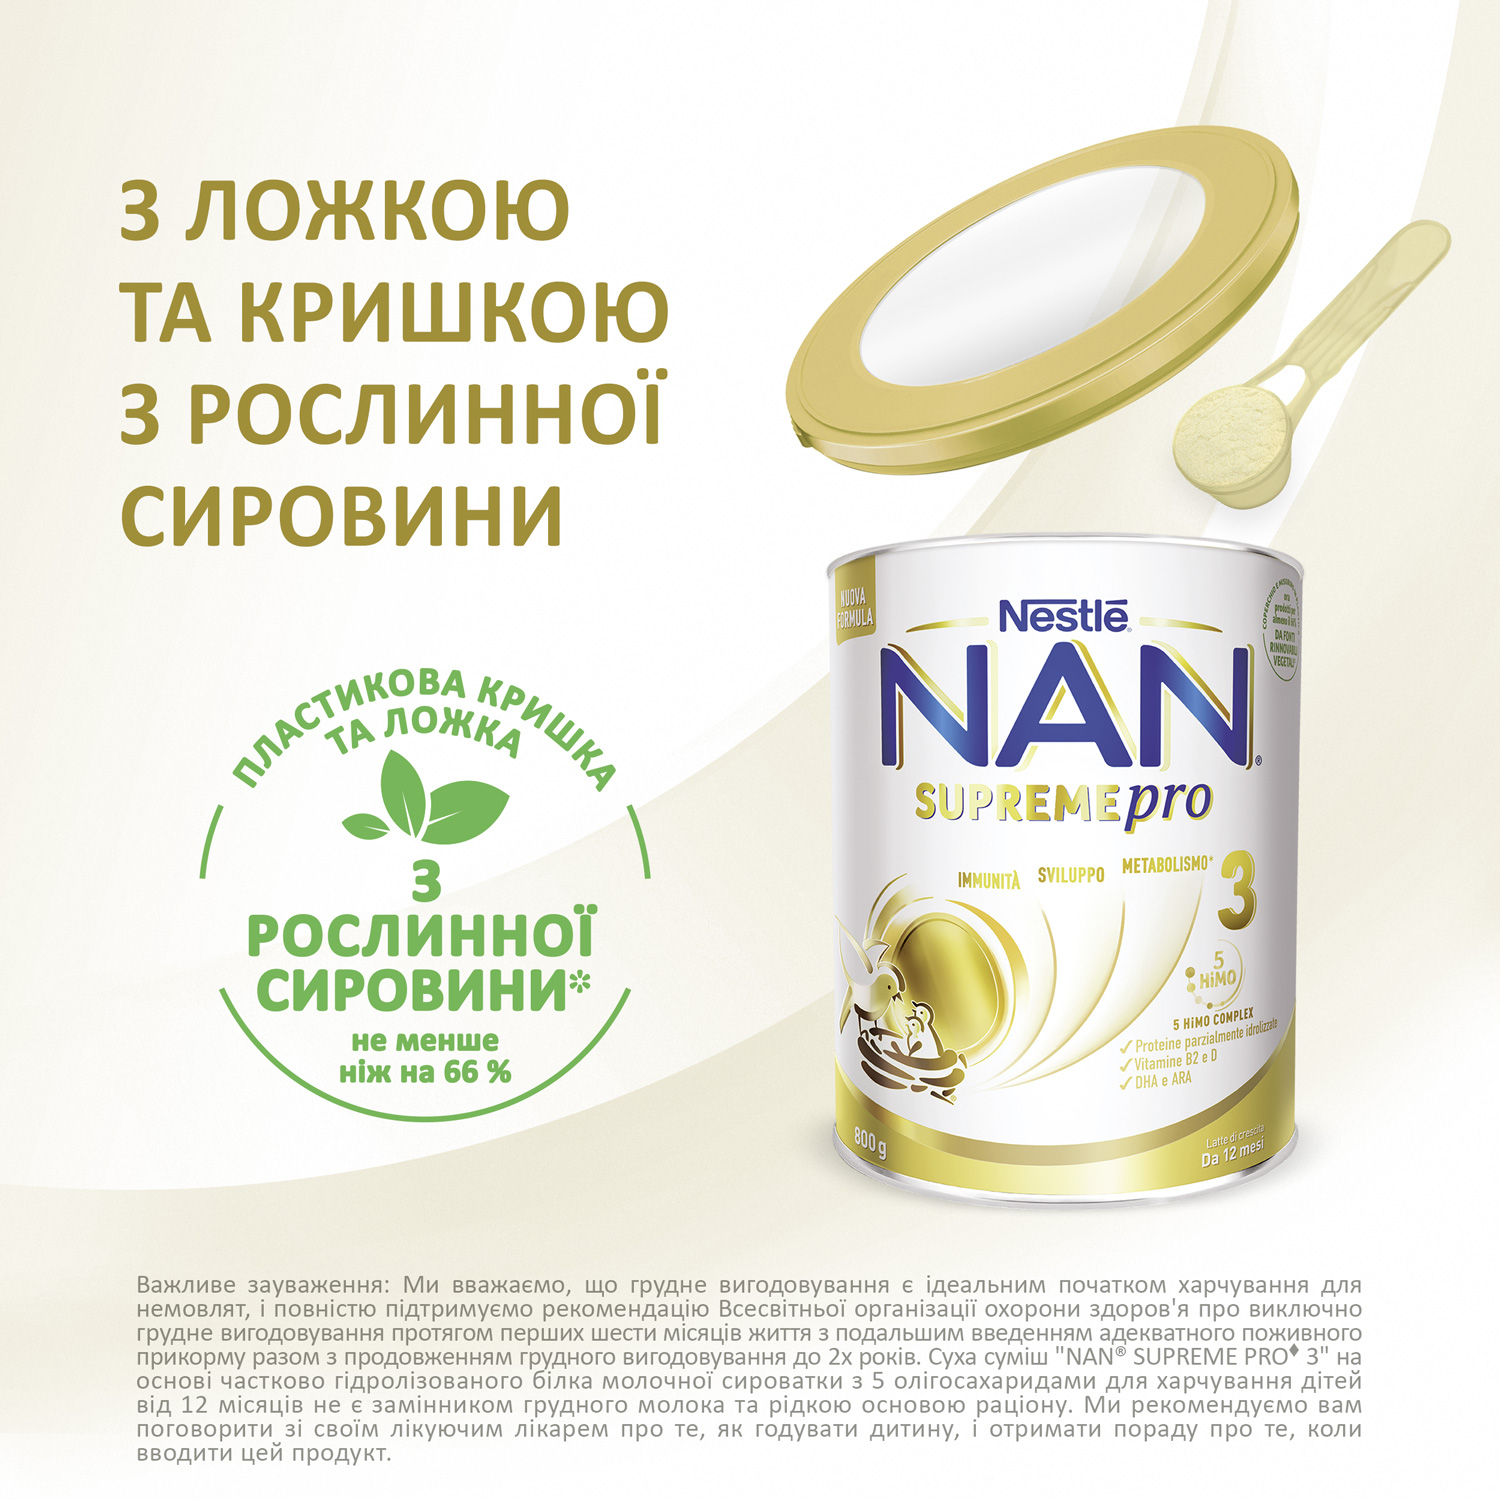 Суха молочна суміш NAN Supreme Pro 3, 800 г - фото 6